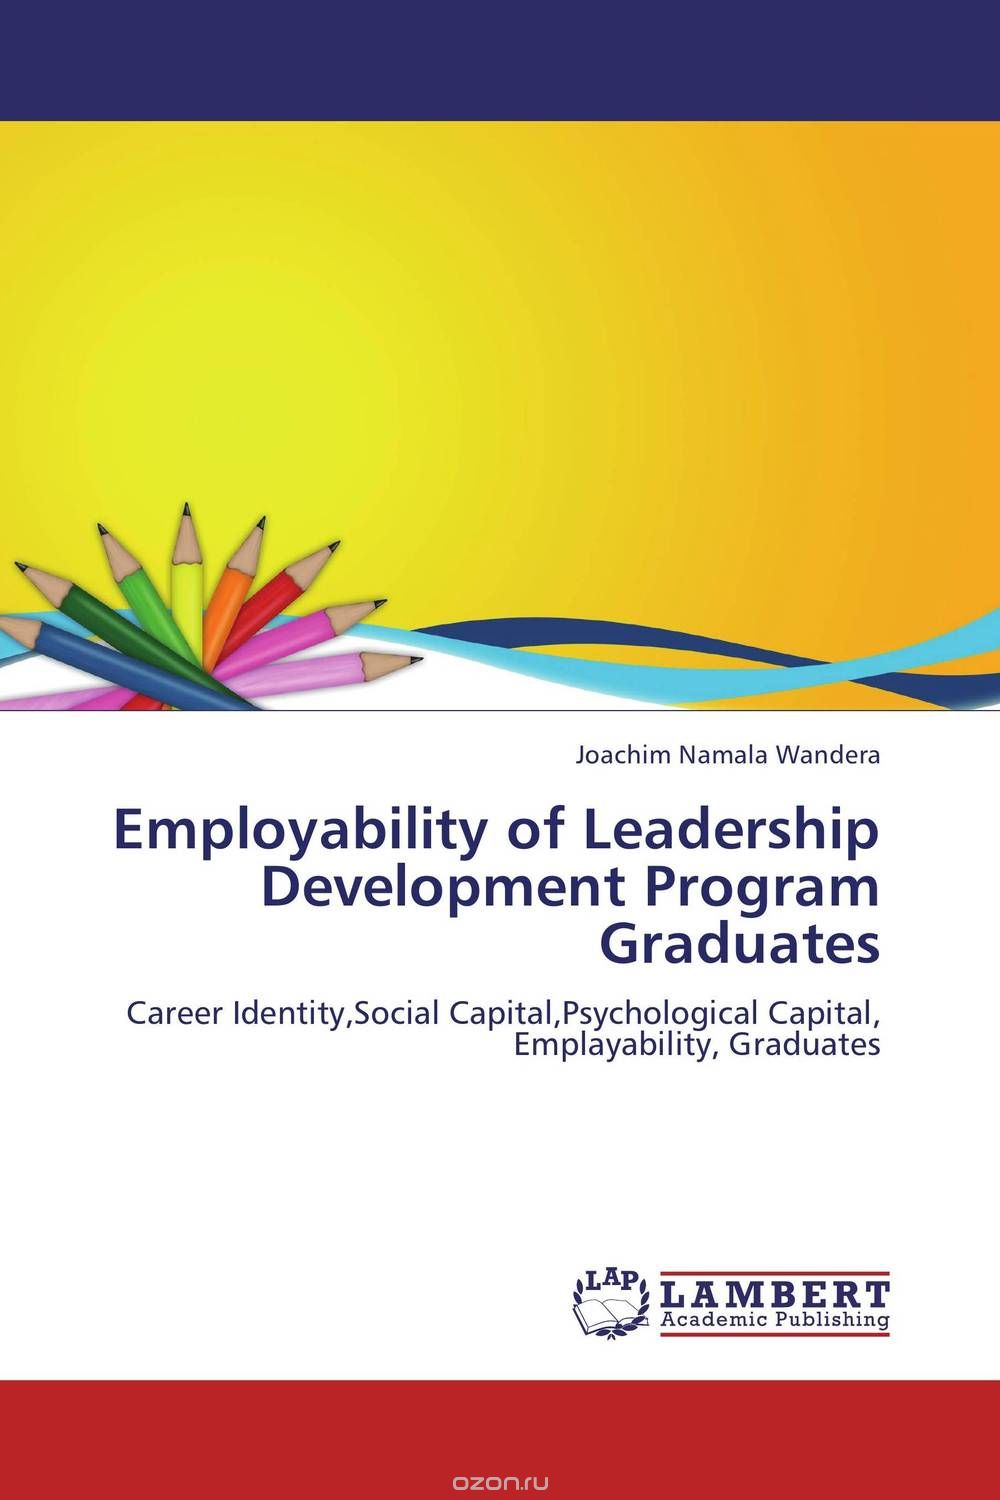 Скачать книгу "Employability of Leadership Development Program Graduates"